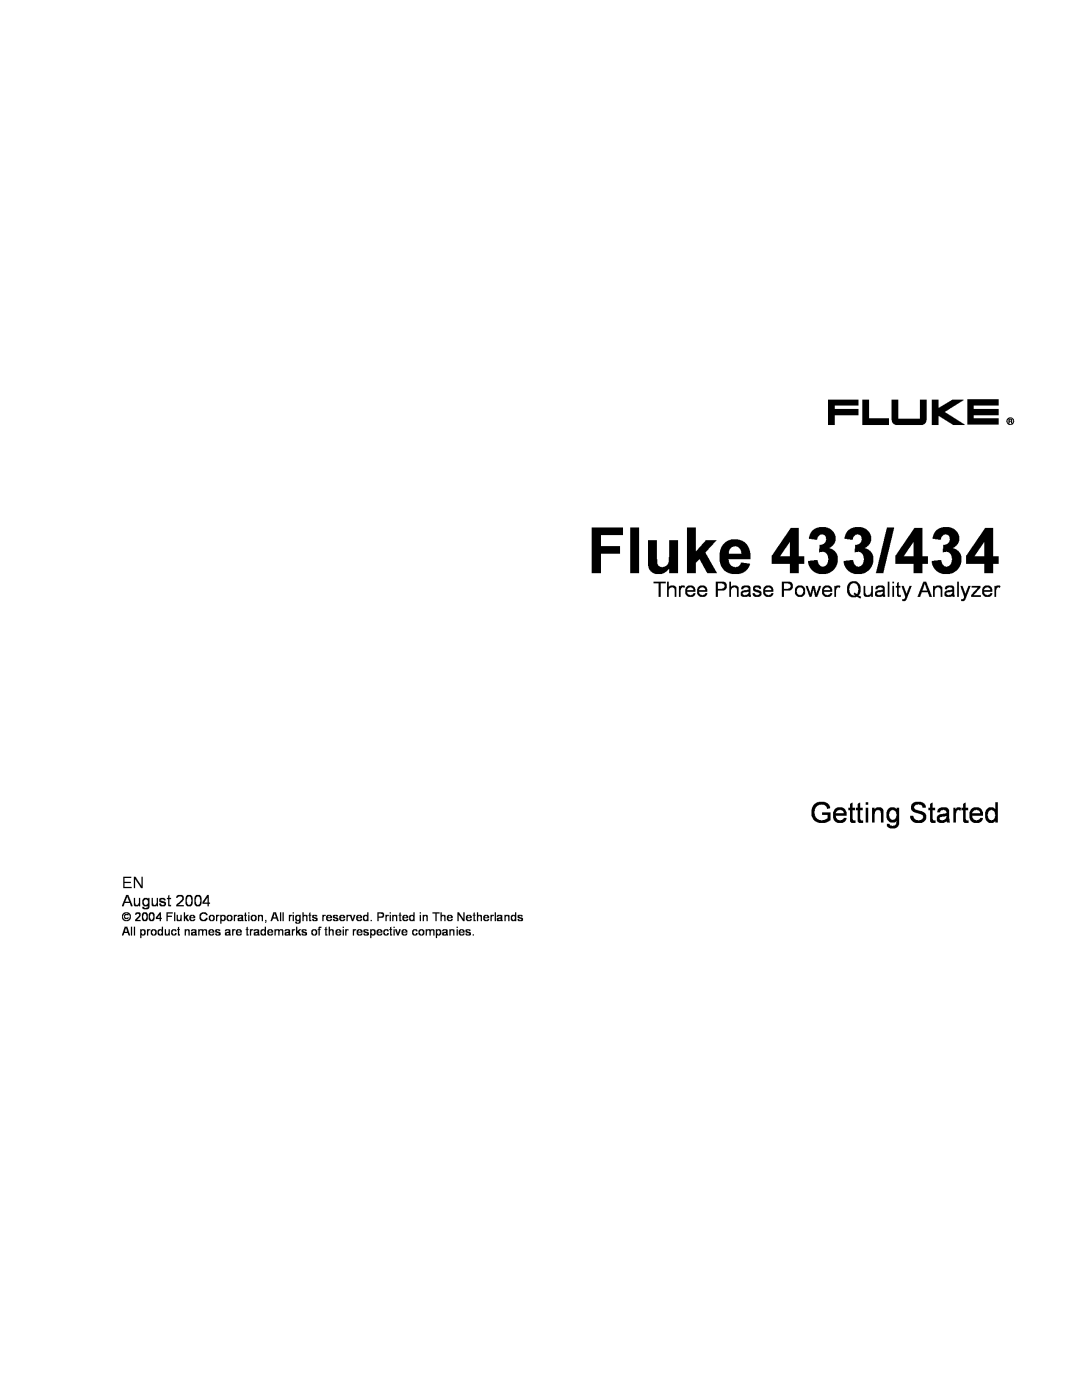 Fluke manual Three Phase Power Quality Analyzer, Fluke 433/434, Getting Started 